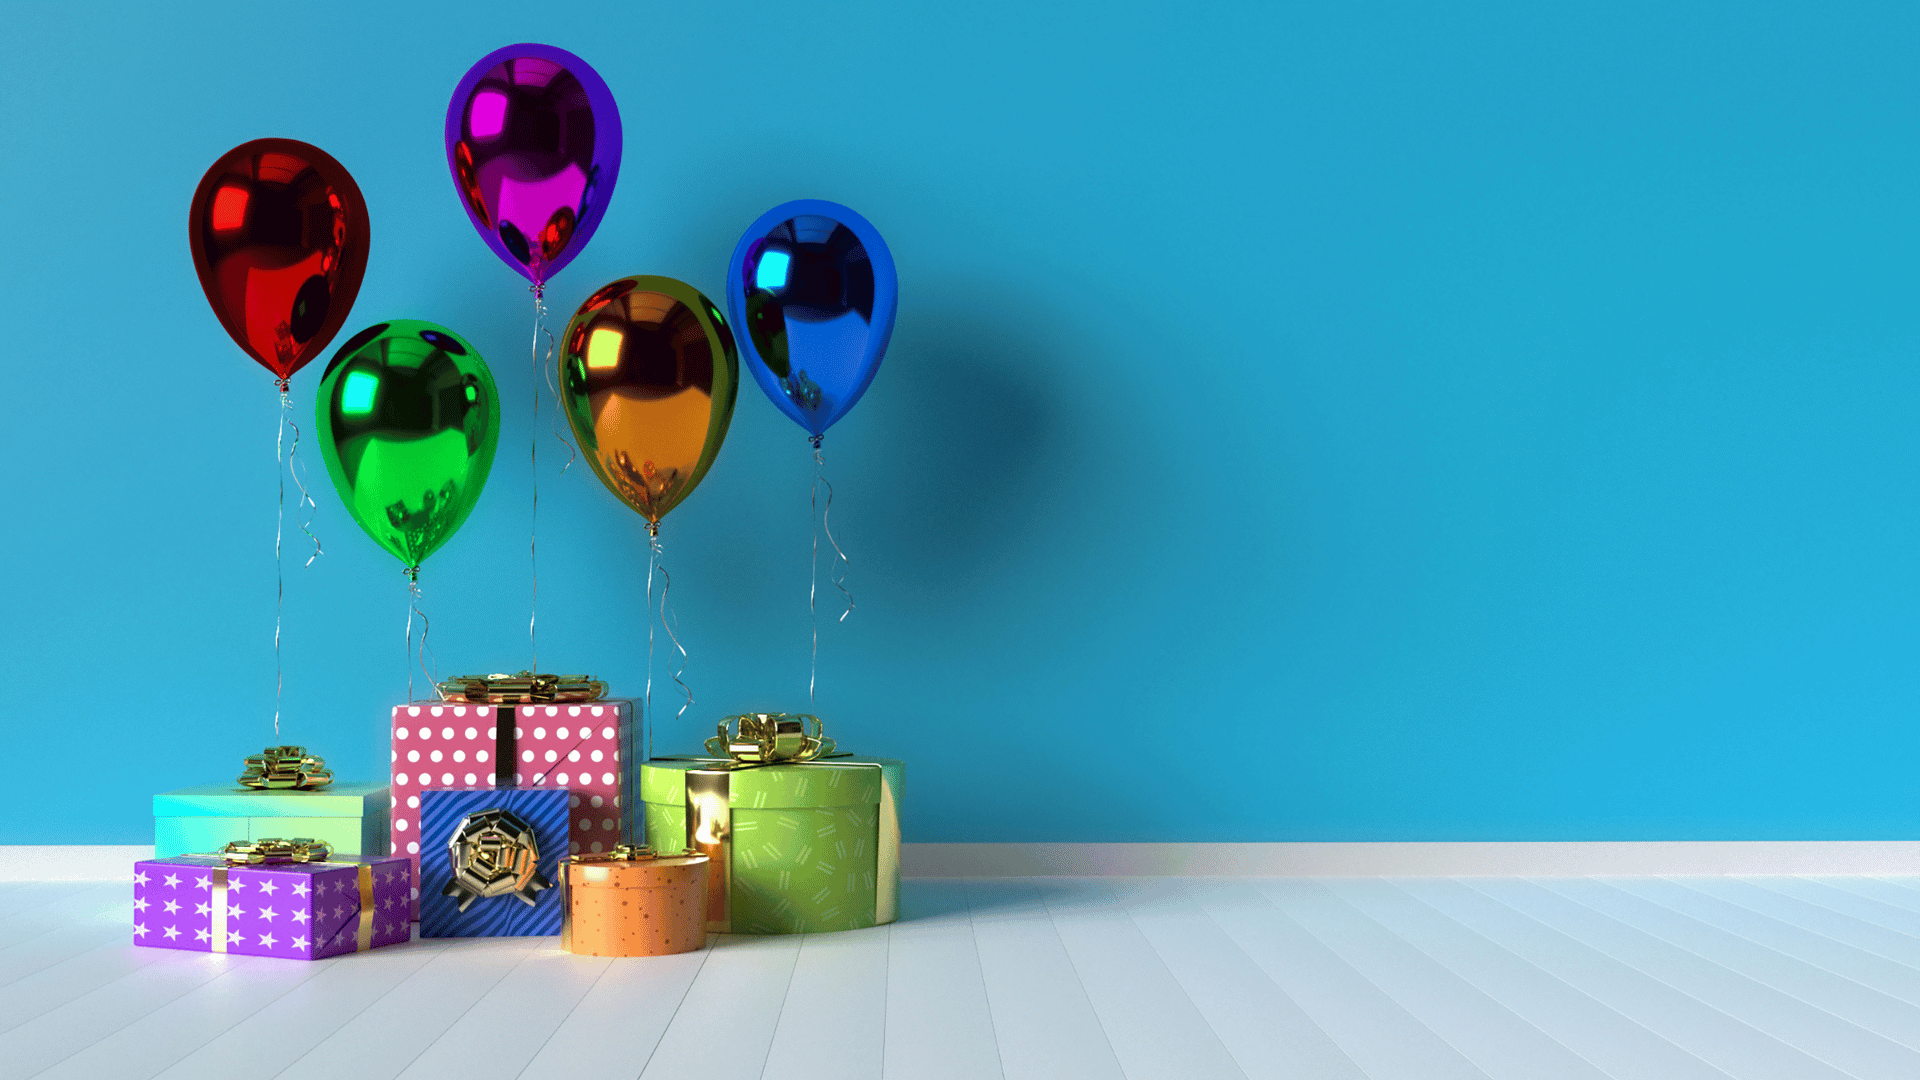 Imagem com uma parede de fundo azul. No chão várias caixas de presentes coloridas com formatos variados e também balões de várias cores.